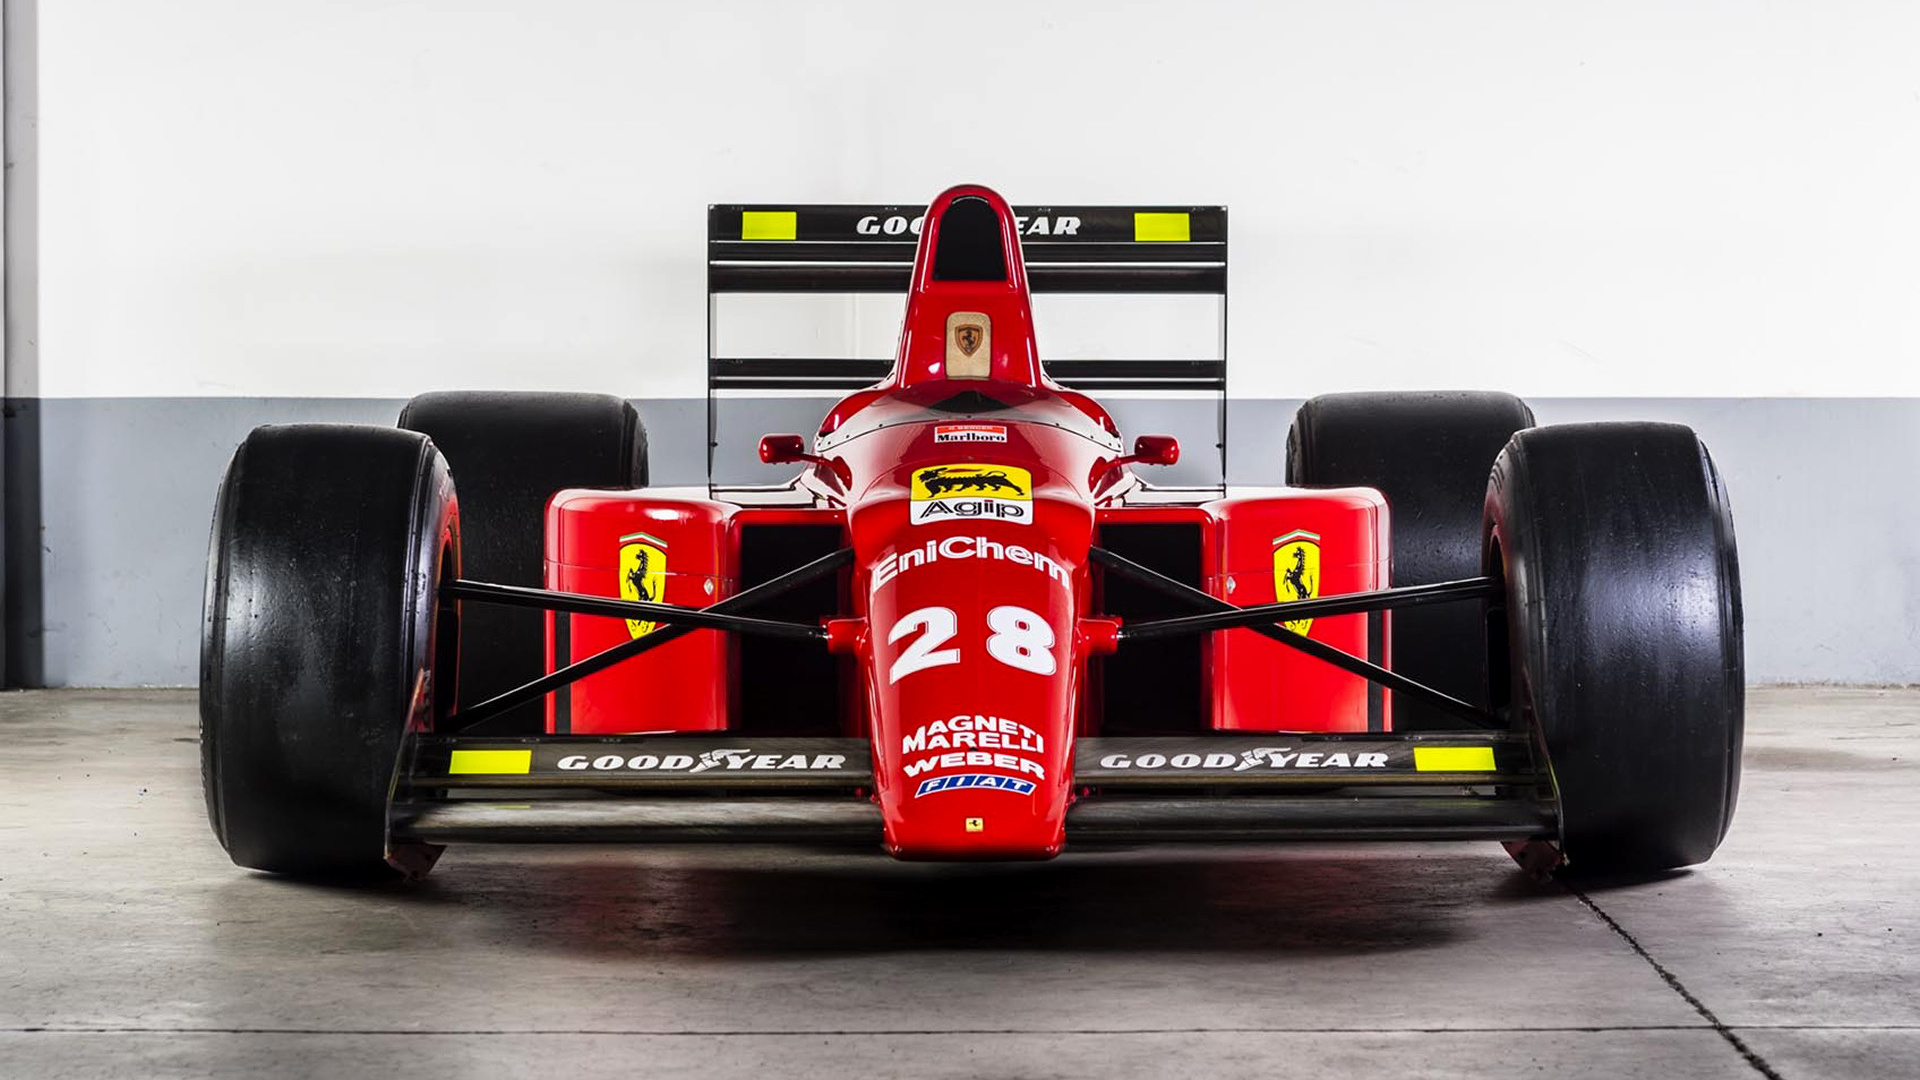 1989 Ferrari F1-89 - Wallpapers and HD Images | Car Pixel